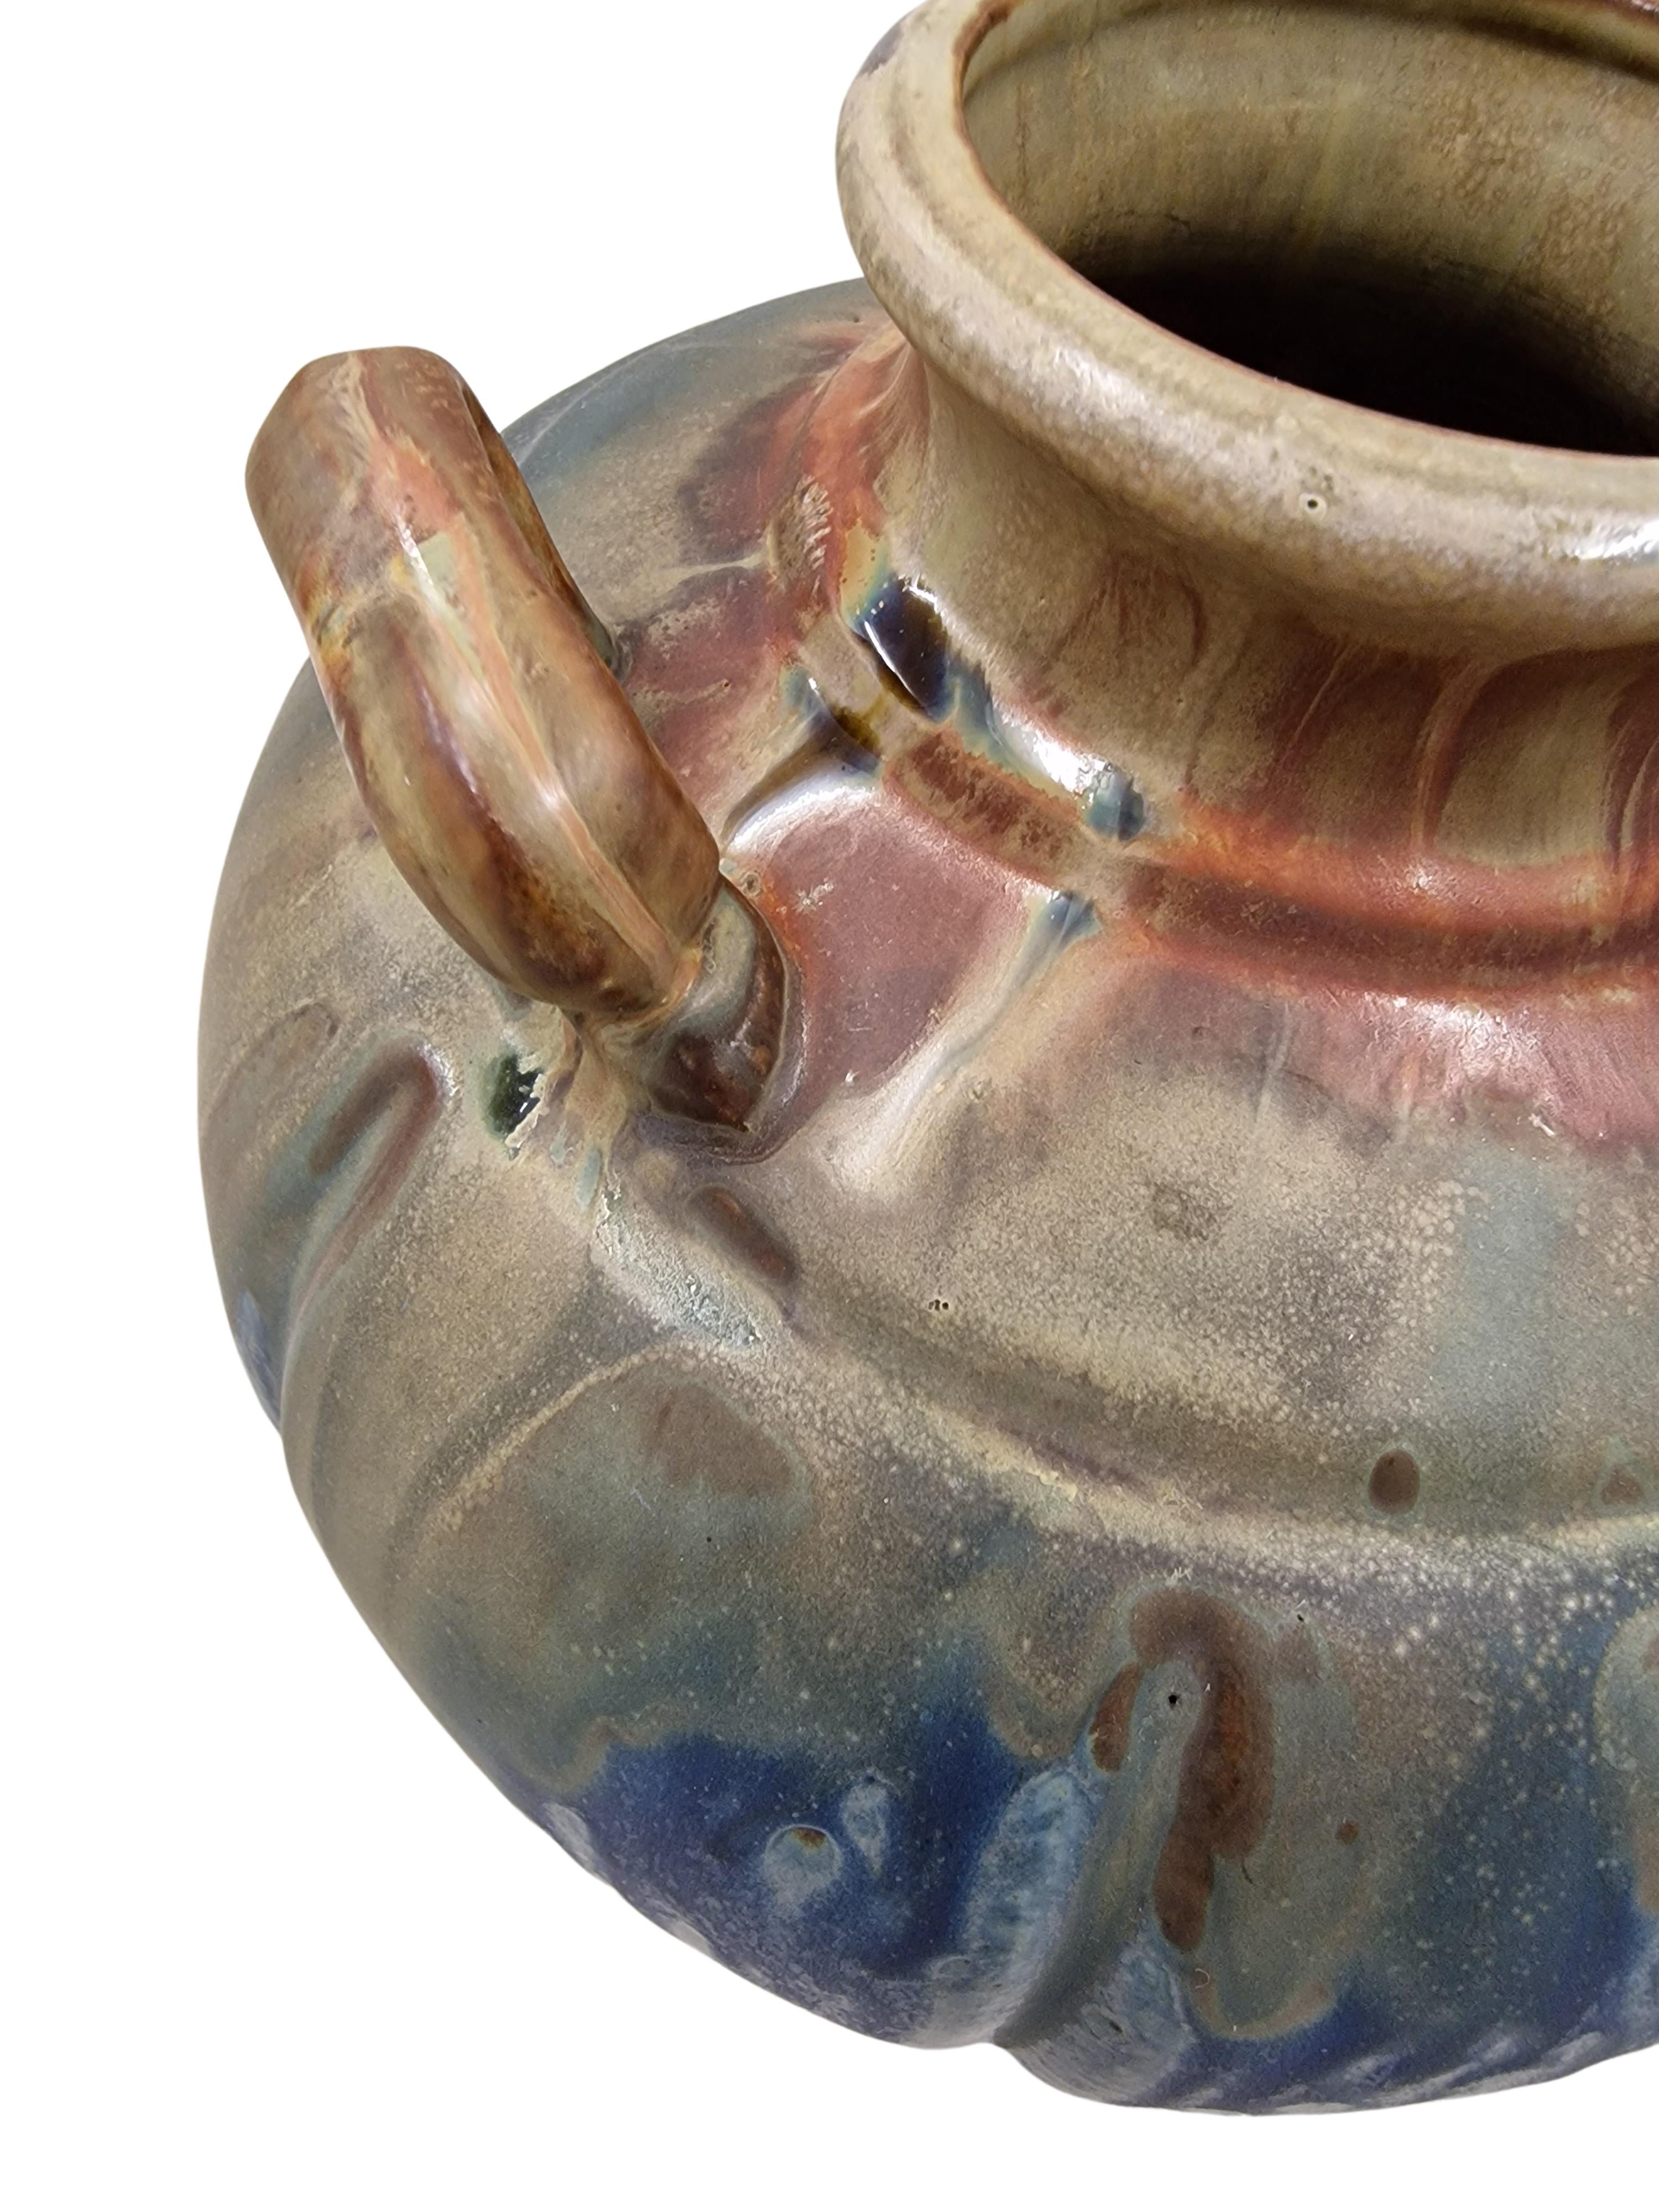 Rare vase, fabriqué en France dans les années 1920, avec une glaçure à ruissellement magistralement exécutée dans des tons de terre. 
La forme compensée du vase présente une sortie ronde supérieure entourée de trois poignées spécialement conçues.